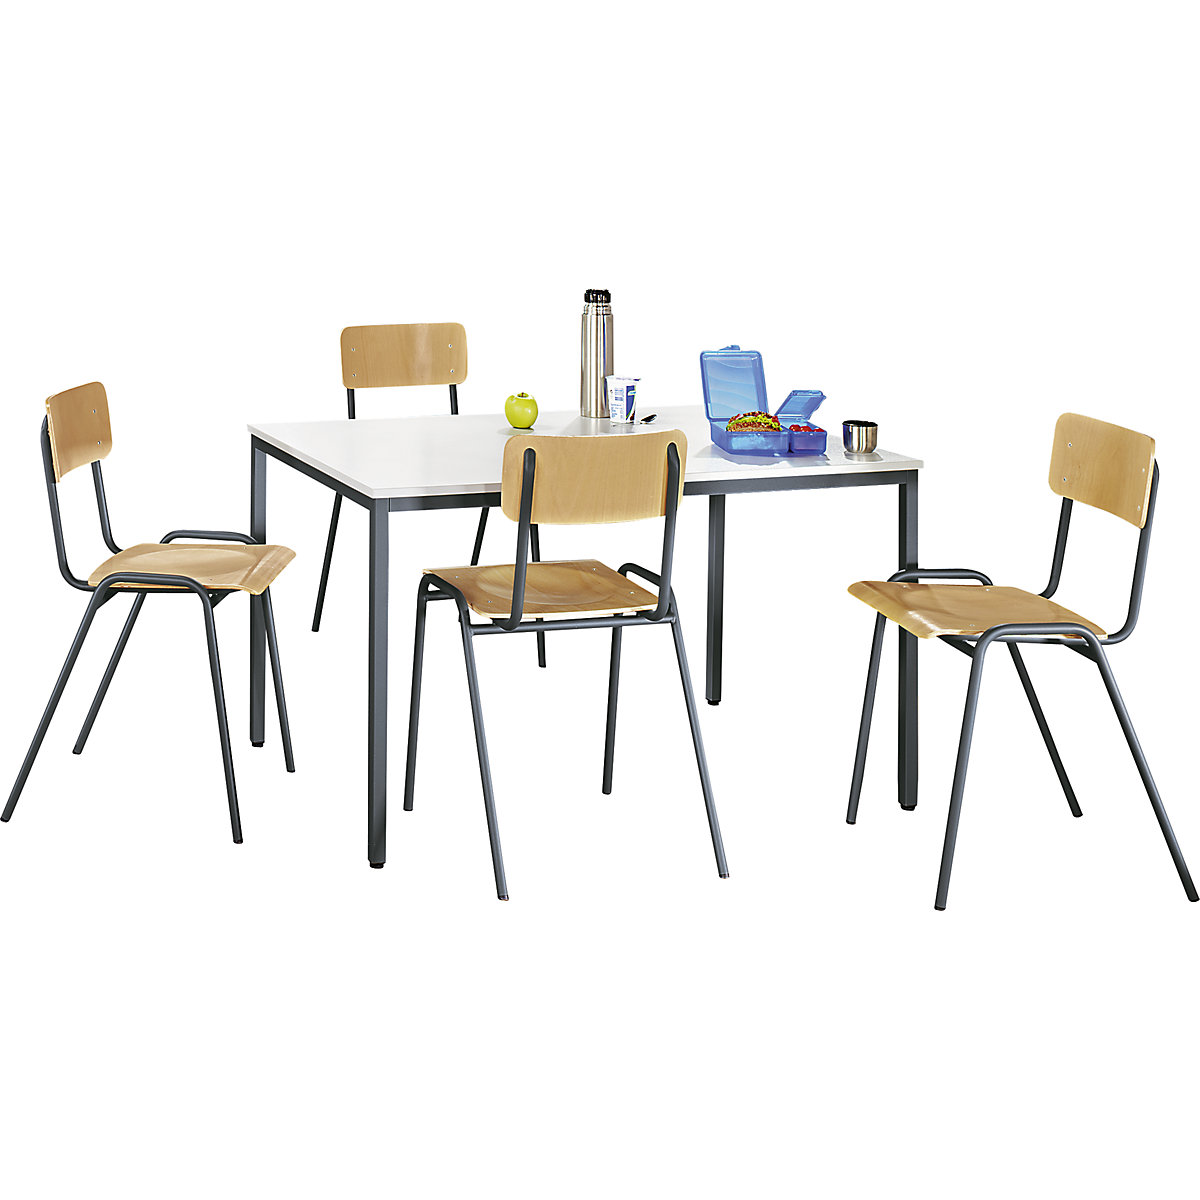 EUROKRAFTbasic – Uniwersalny zestaw mebli do siedzenia, 1 stół, 4 krzesła, blat jasnoszary, szkielet bazaltowo-szary